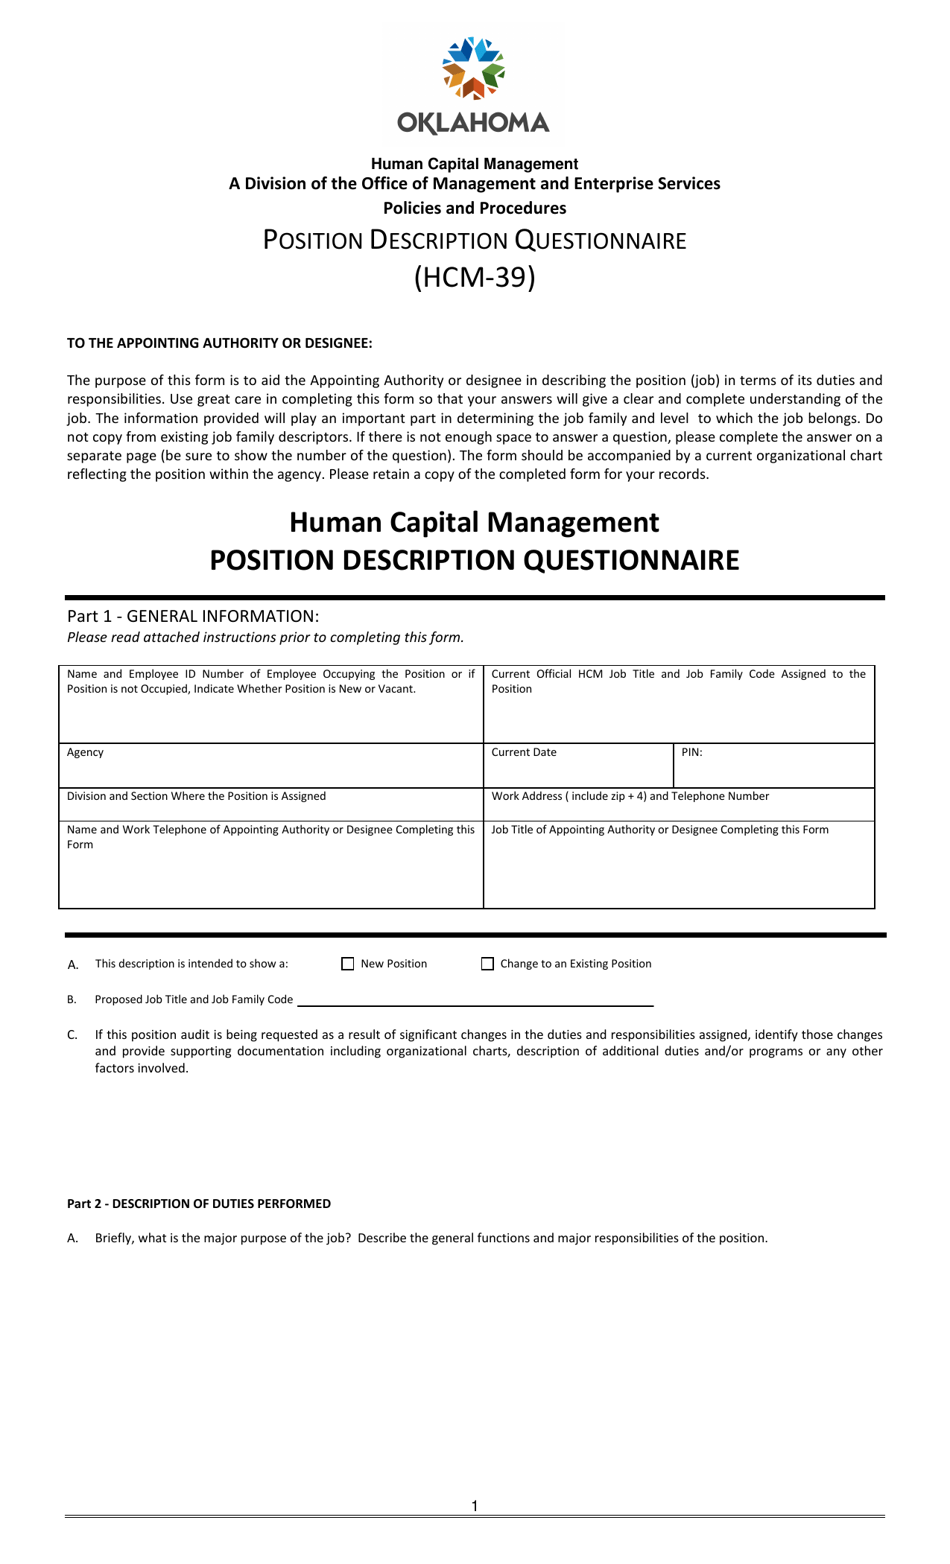 Form HCM-39 Position Description Questionnaire - Oklahoma, Page 1